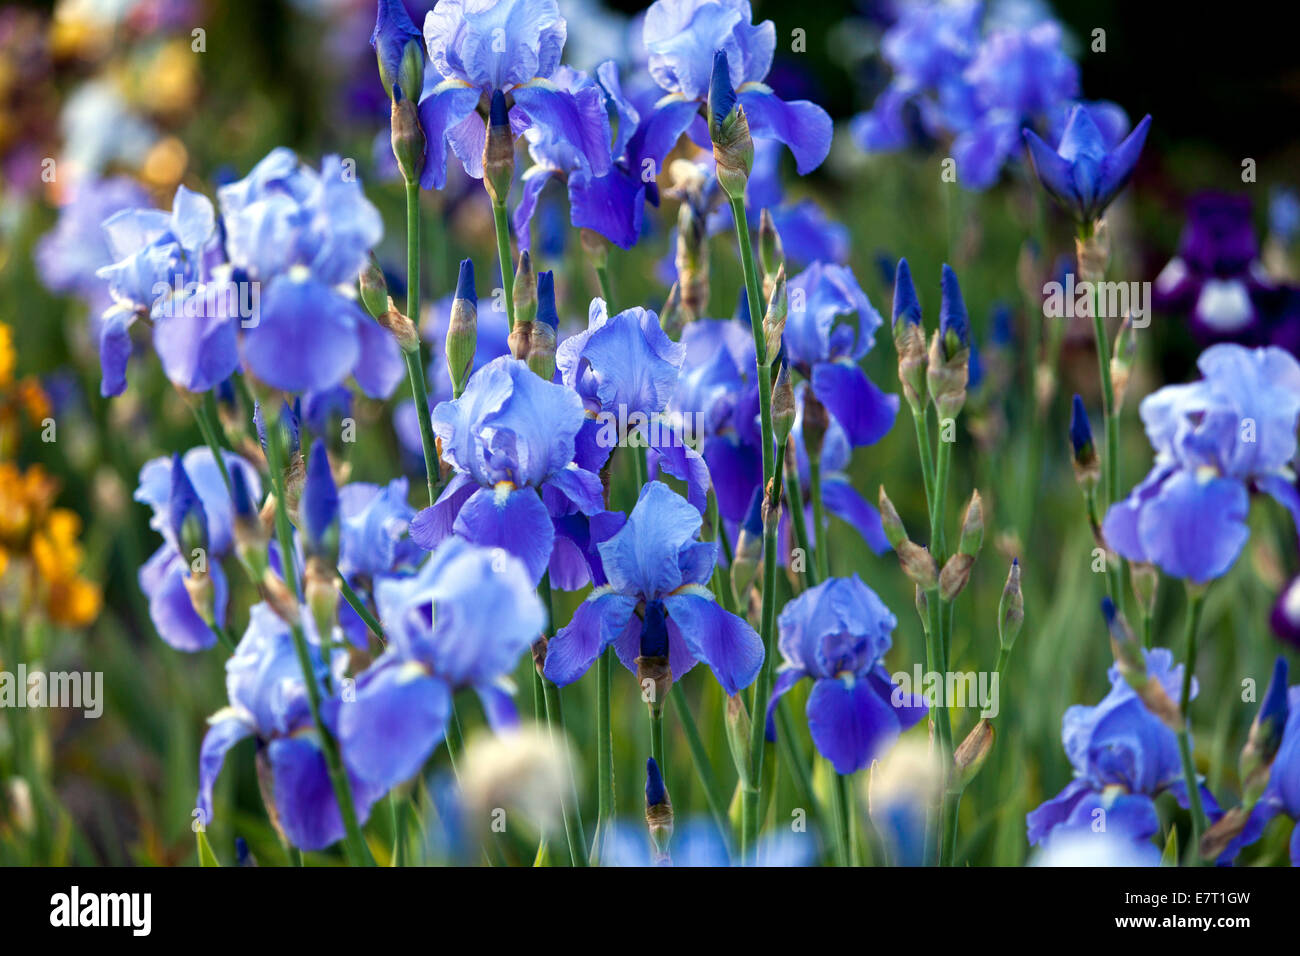 Hohe Bartlilie im Garten Irisblume blaue Iris, Gartenblumen im Bett, schöne Gartenblumen Grenze Stockfoto